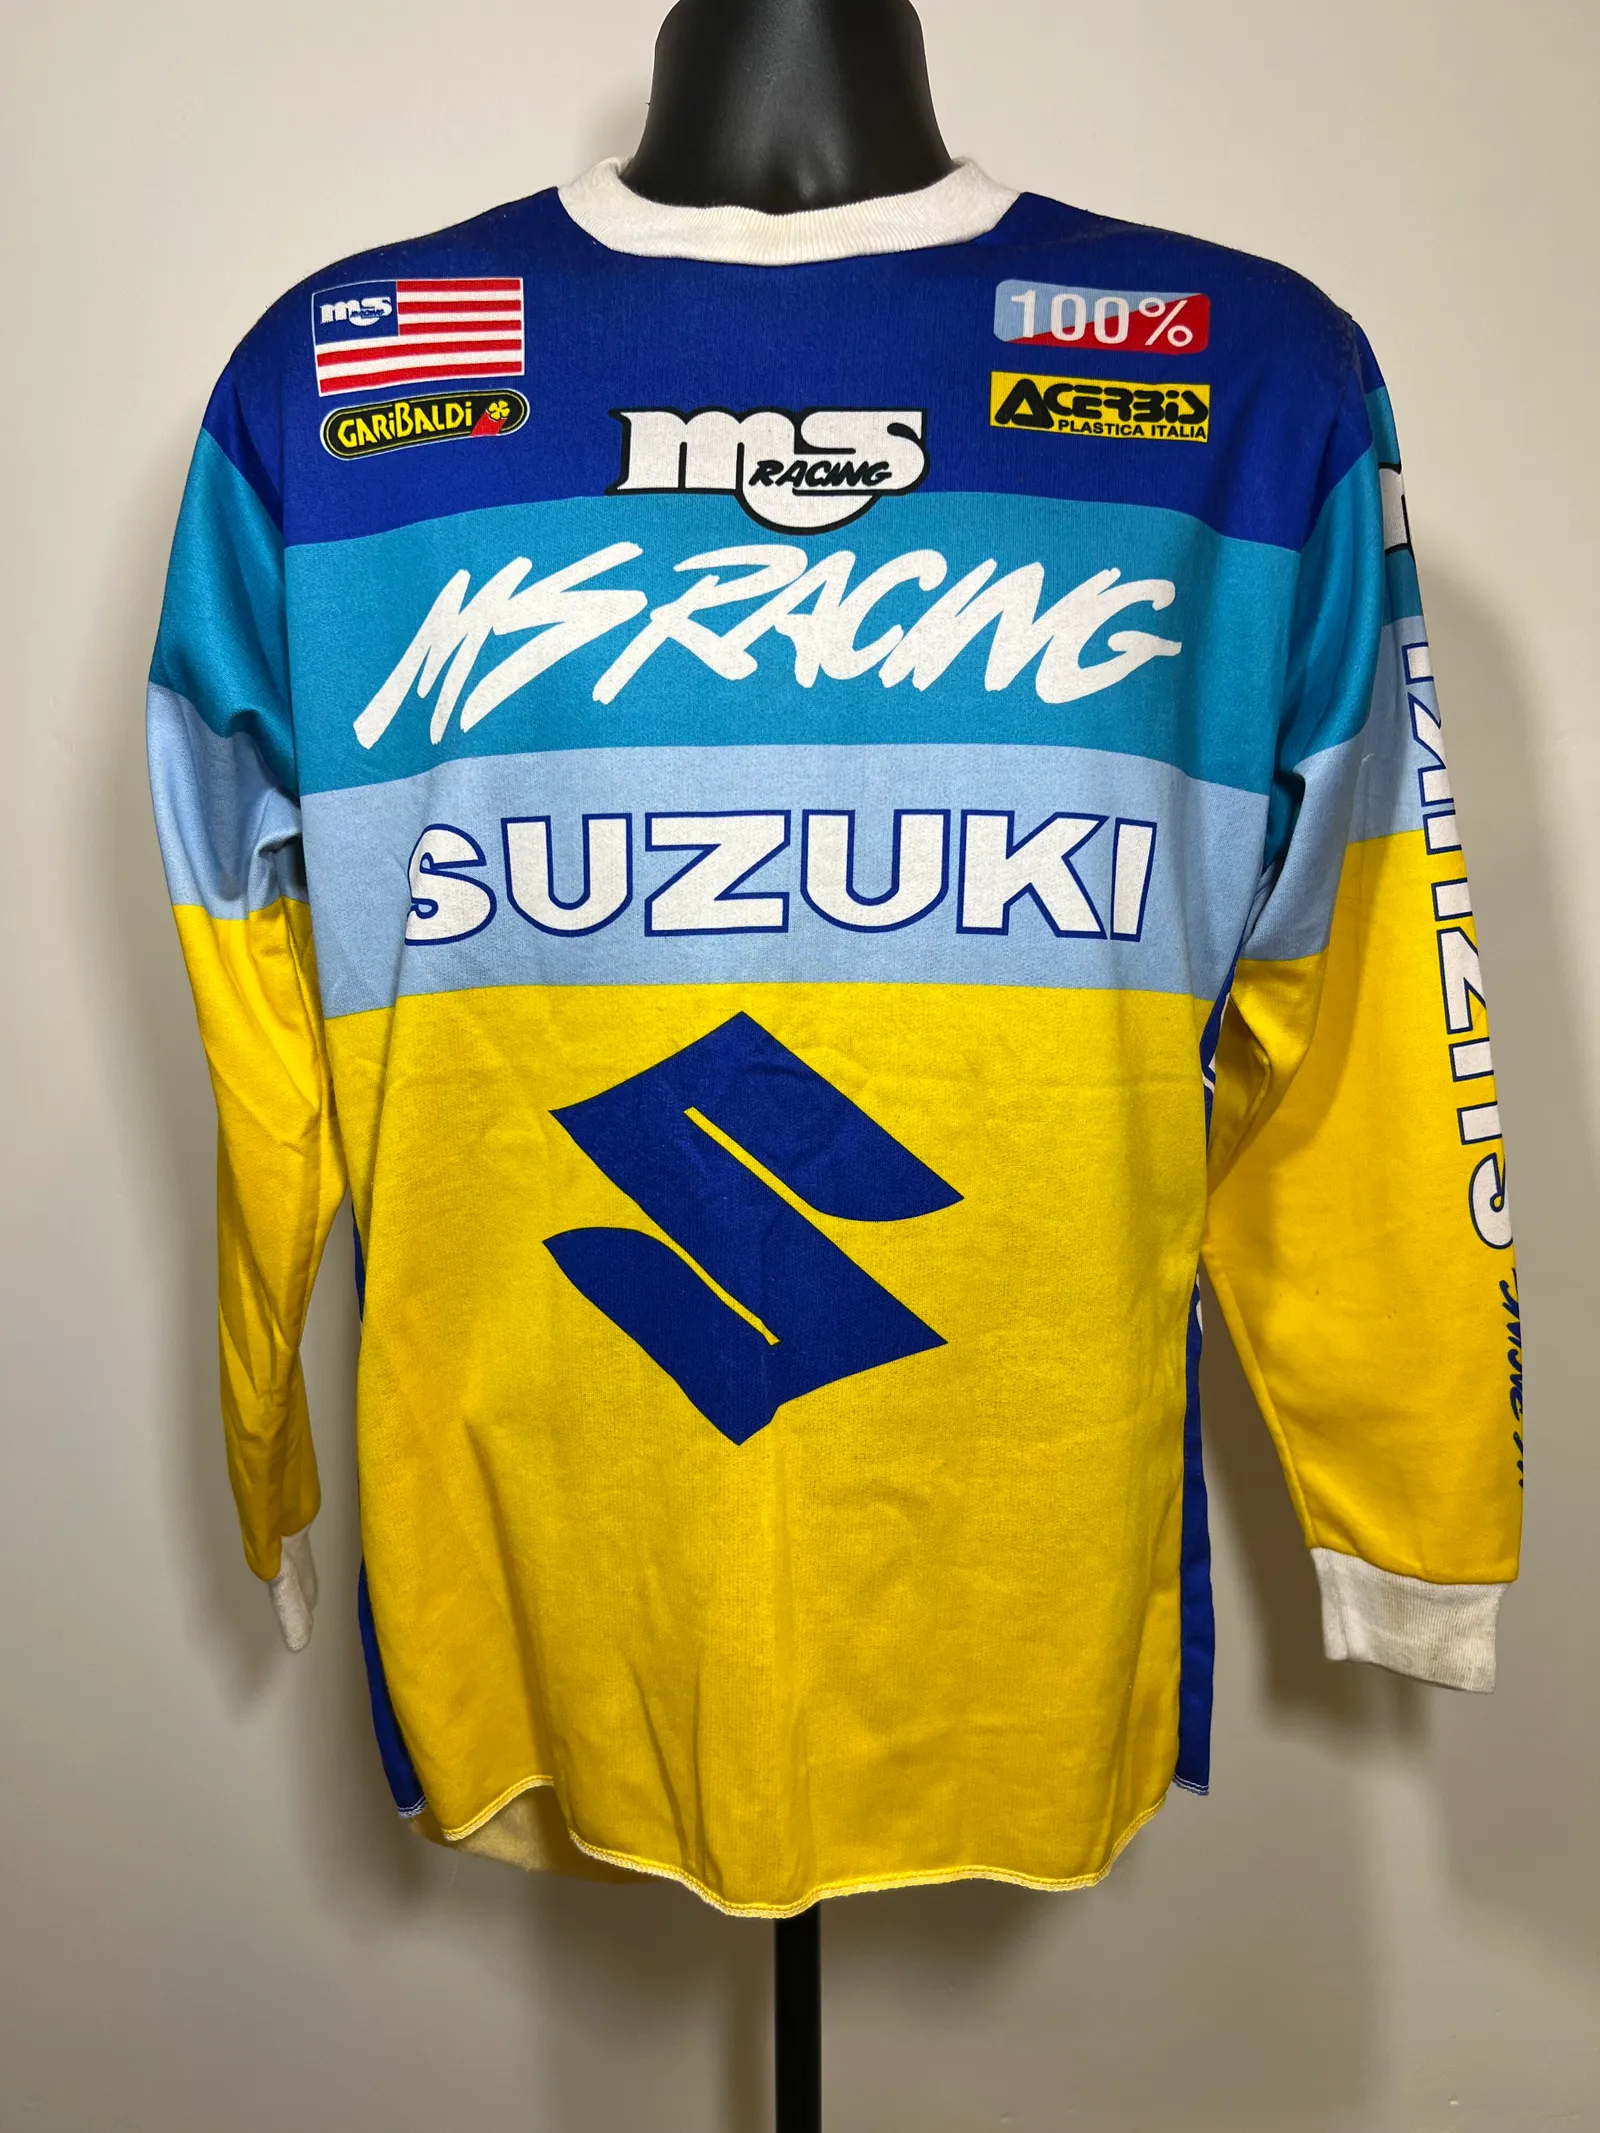 Tony Winn MS Racing Suzuki Jersey